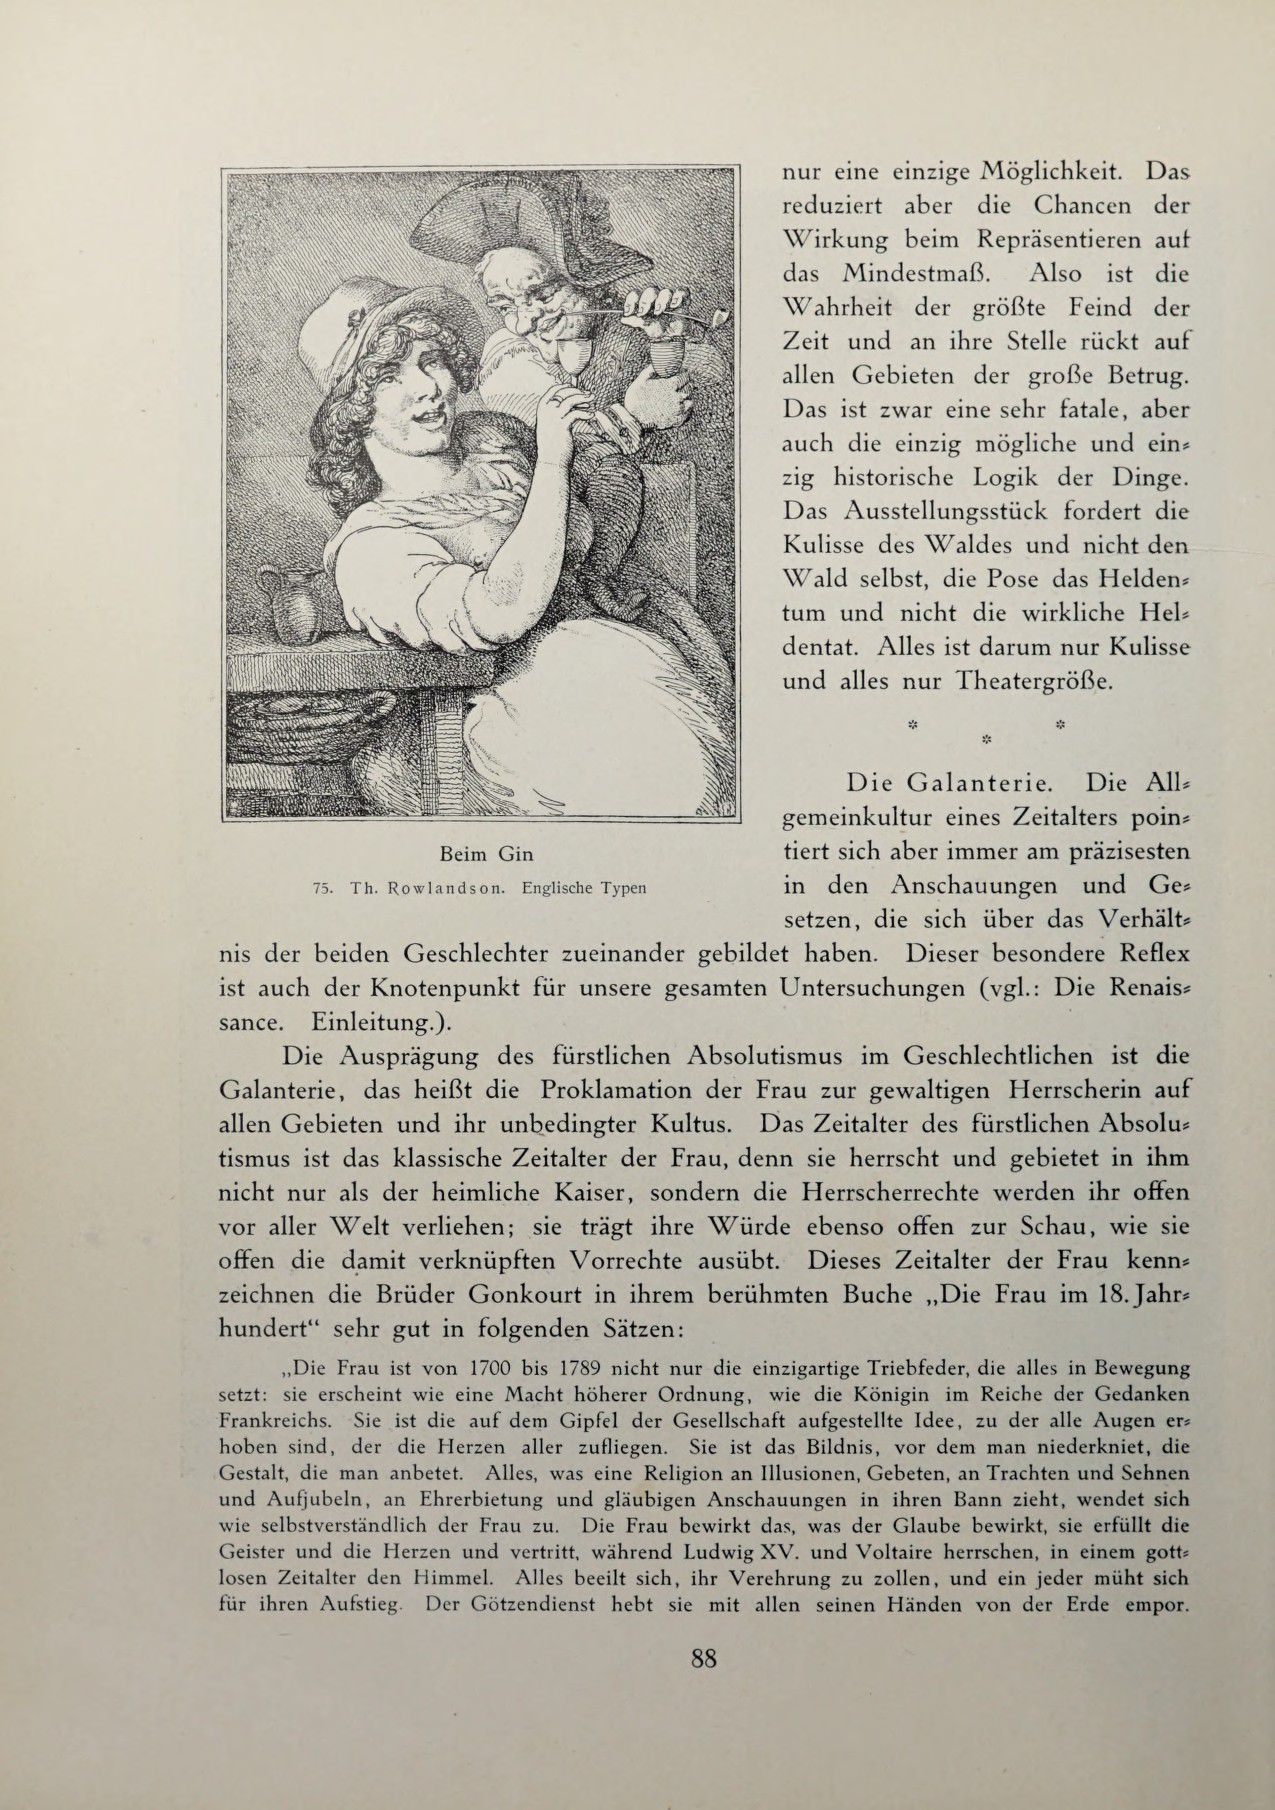 [Eduard Fuchs] Illustrierte Sittengeschichte vom Mittelalter bis zur Gegenwart: Bd. 2. and Ergänzungsband. Die galante Zeit [German] 139